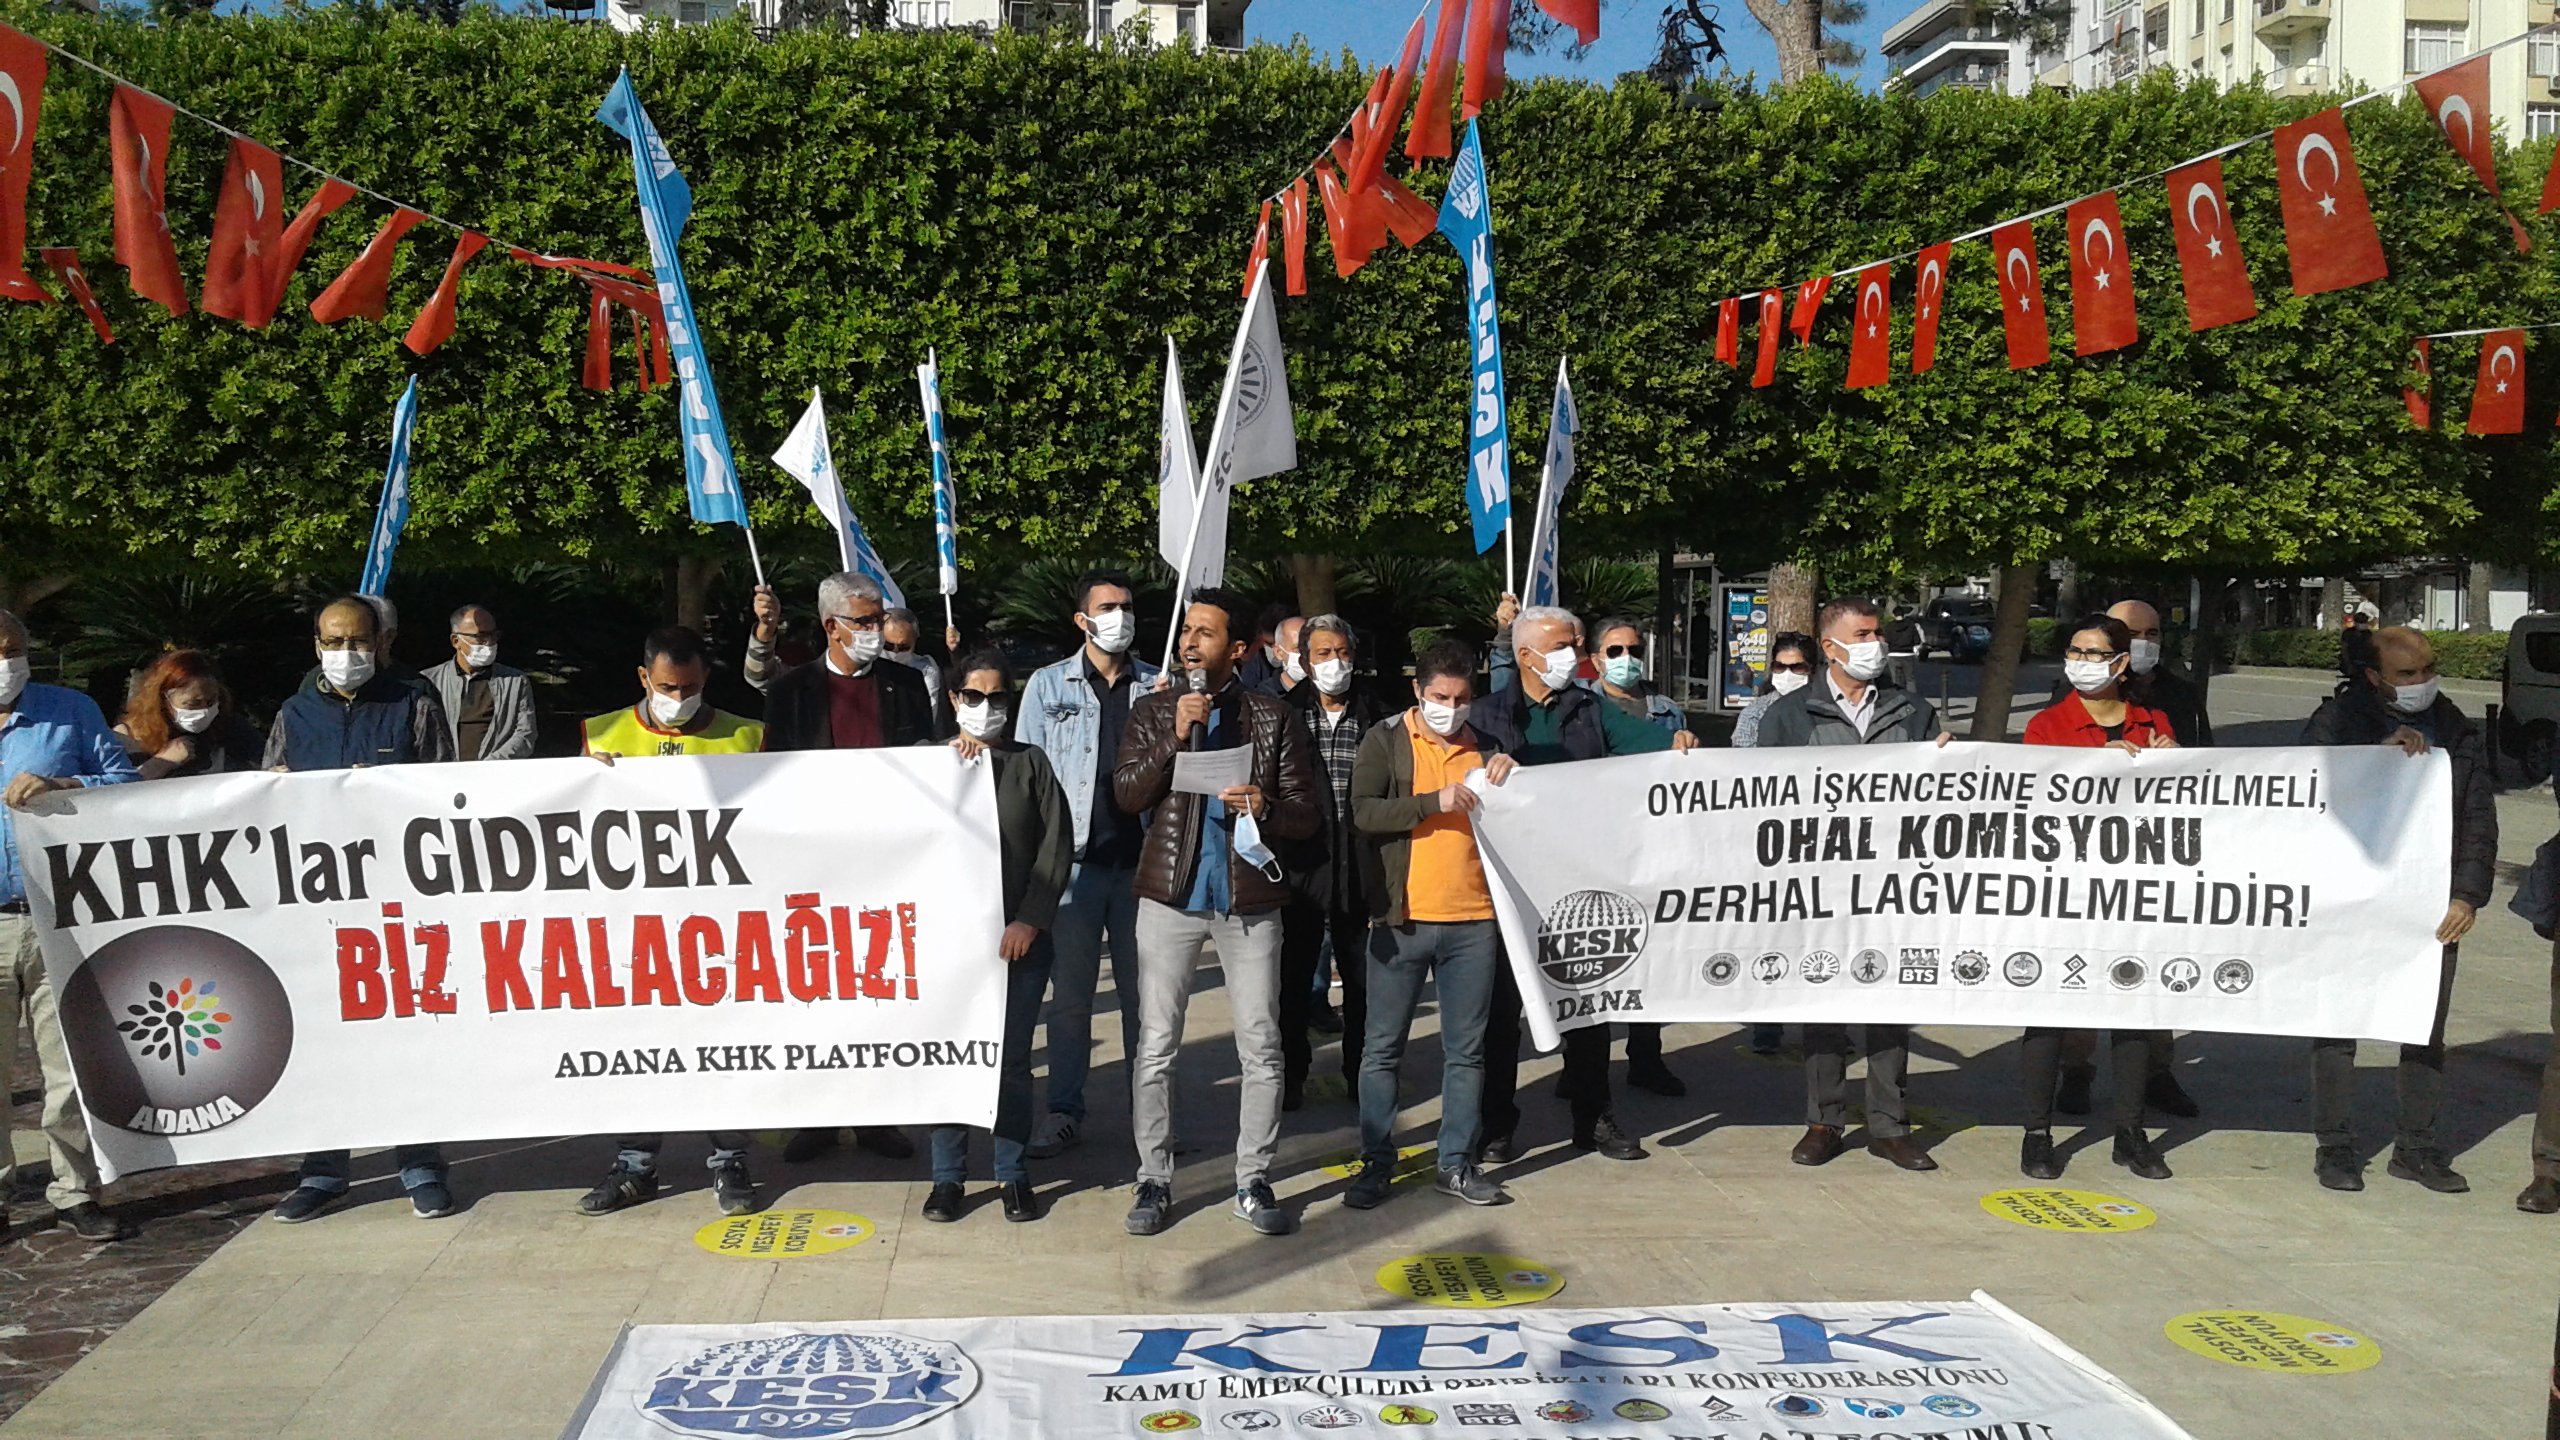 KHK İhraçları İçin Açıklama Yapan KESK Adana Şubeler Platformu: Biz Kazanacağız, Geri Döneceğiz